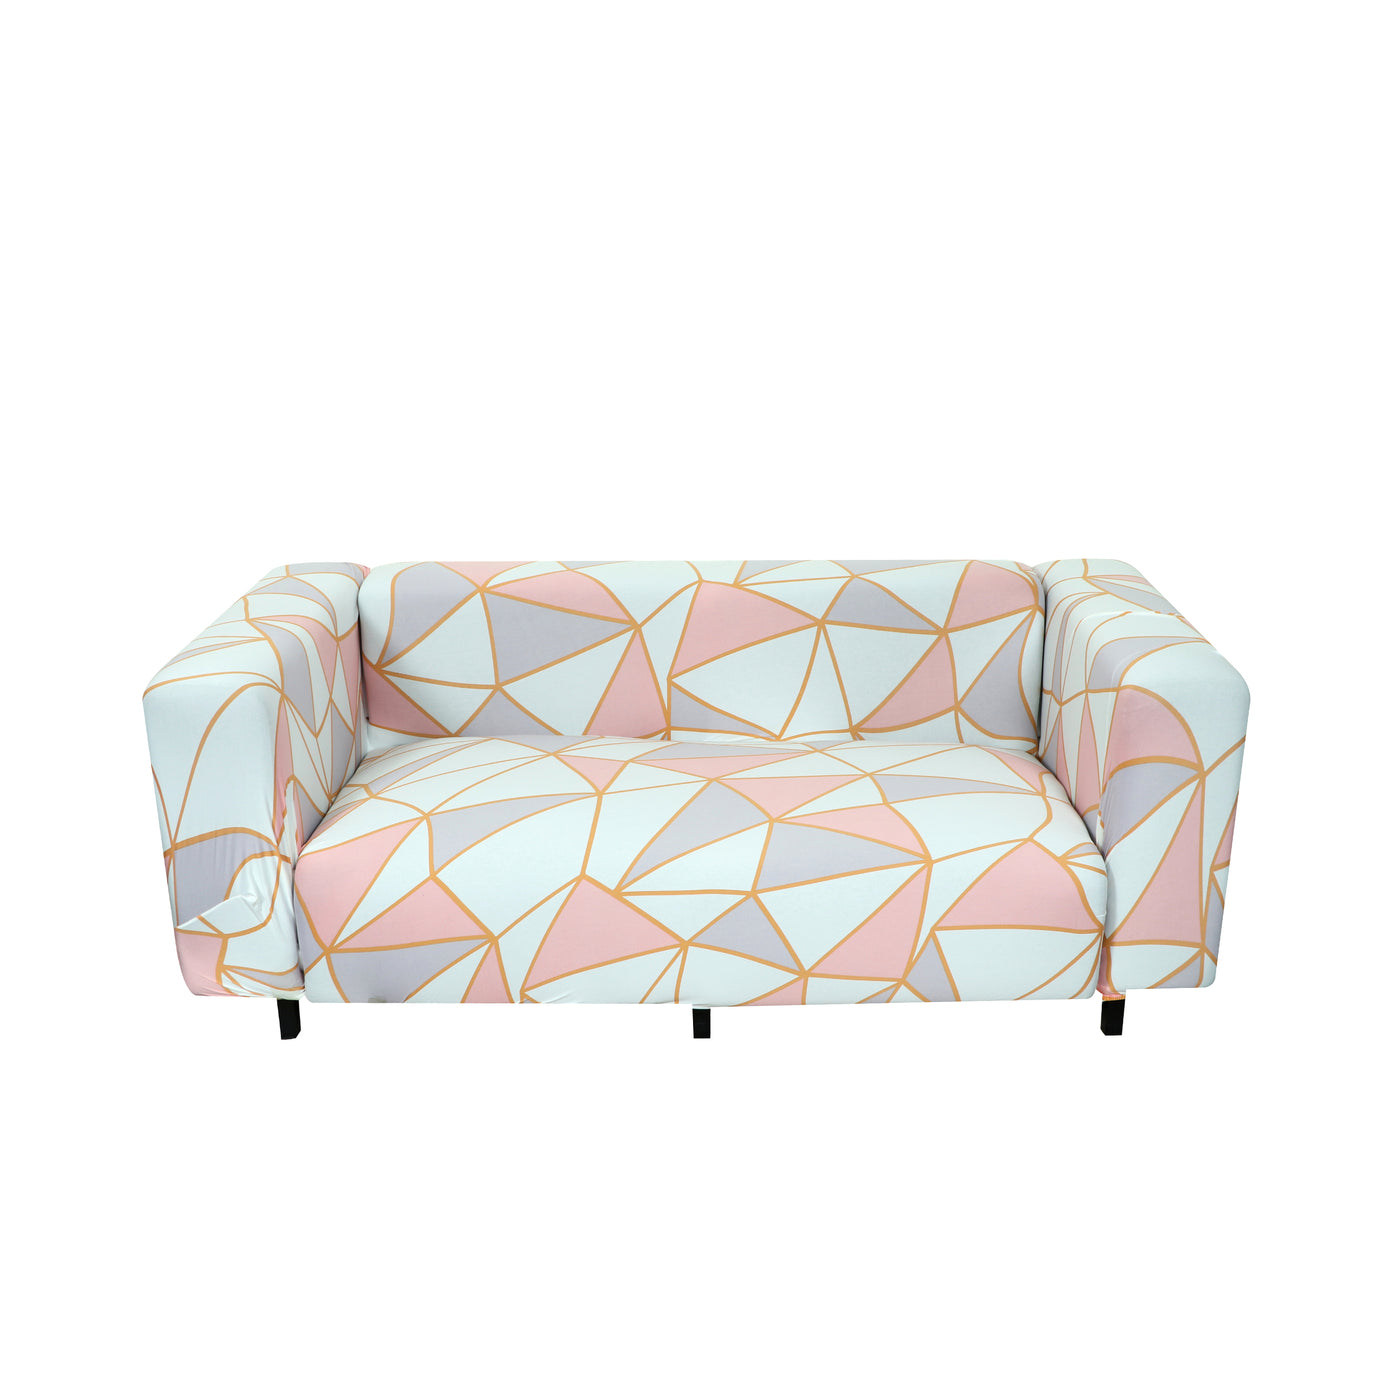 Printed Sofa Cover - Pink Prism